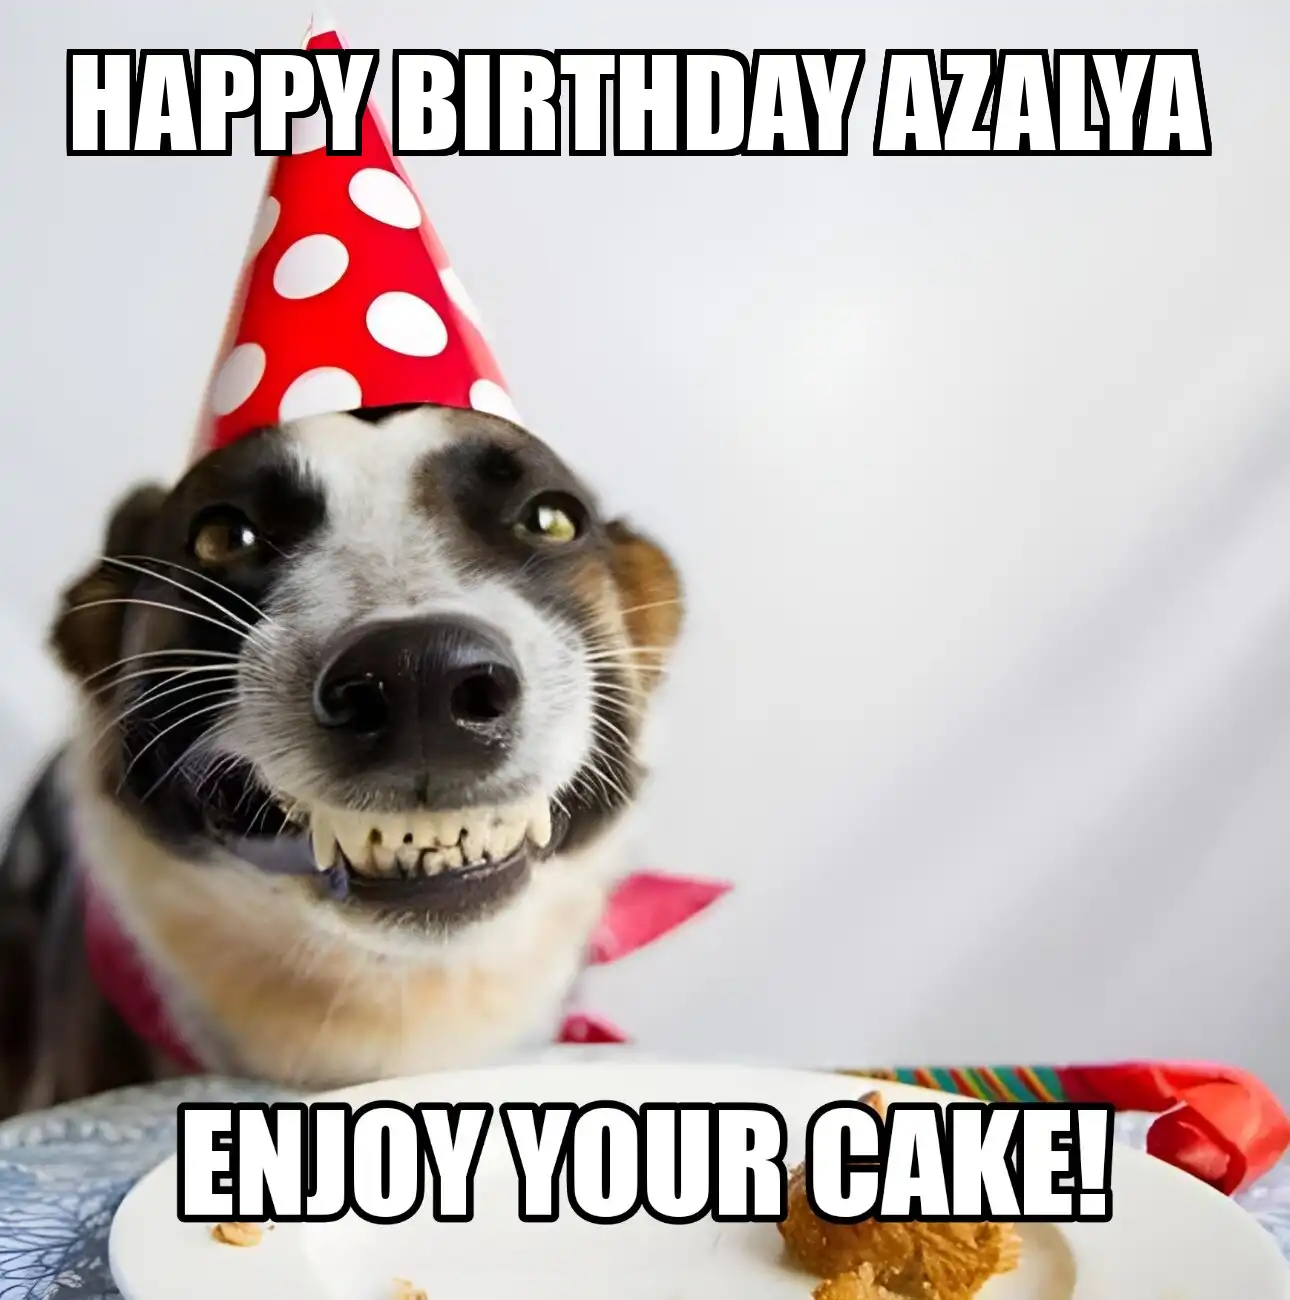 Happy Birthday Azalya Enjoy Your Cake Dog Meme